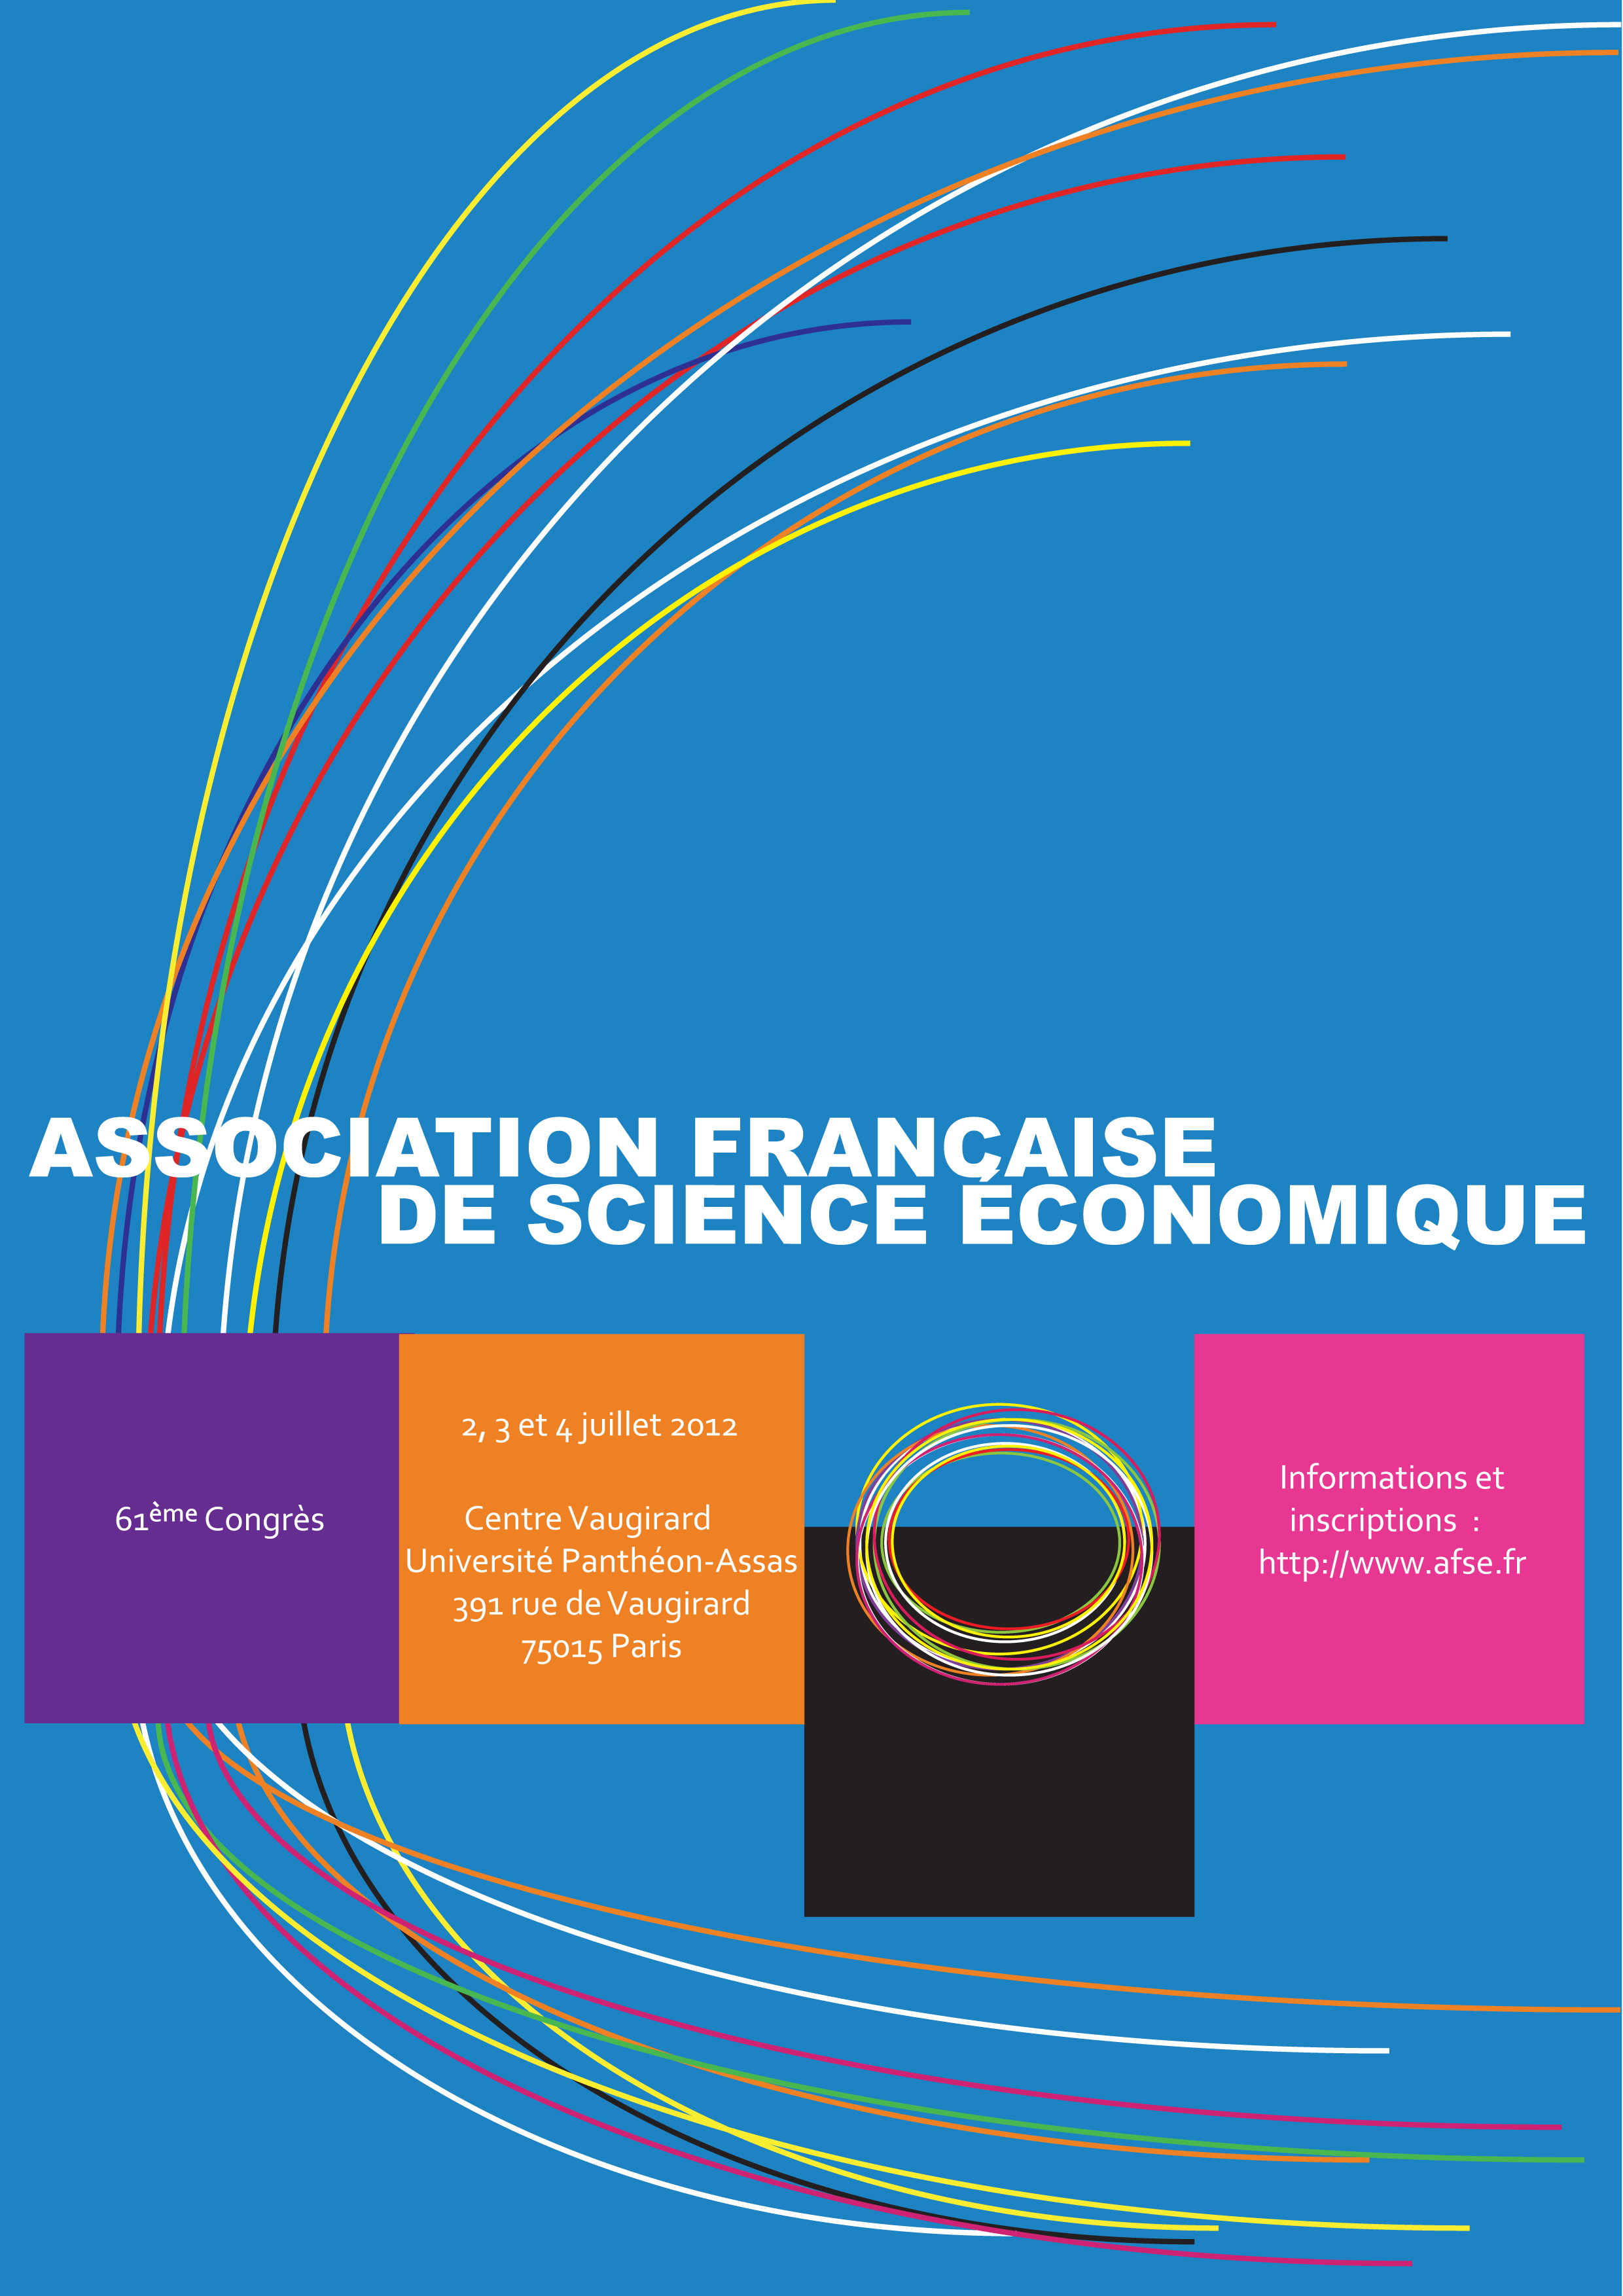 61ème Congrès de l’Association Française de Science Économique